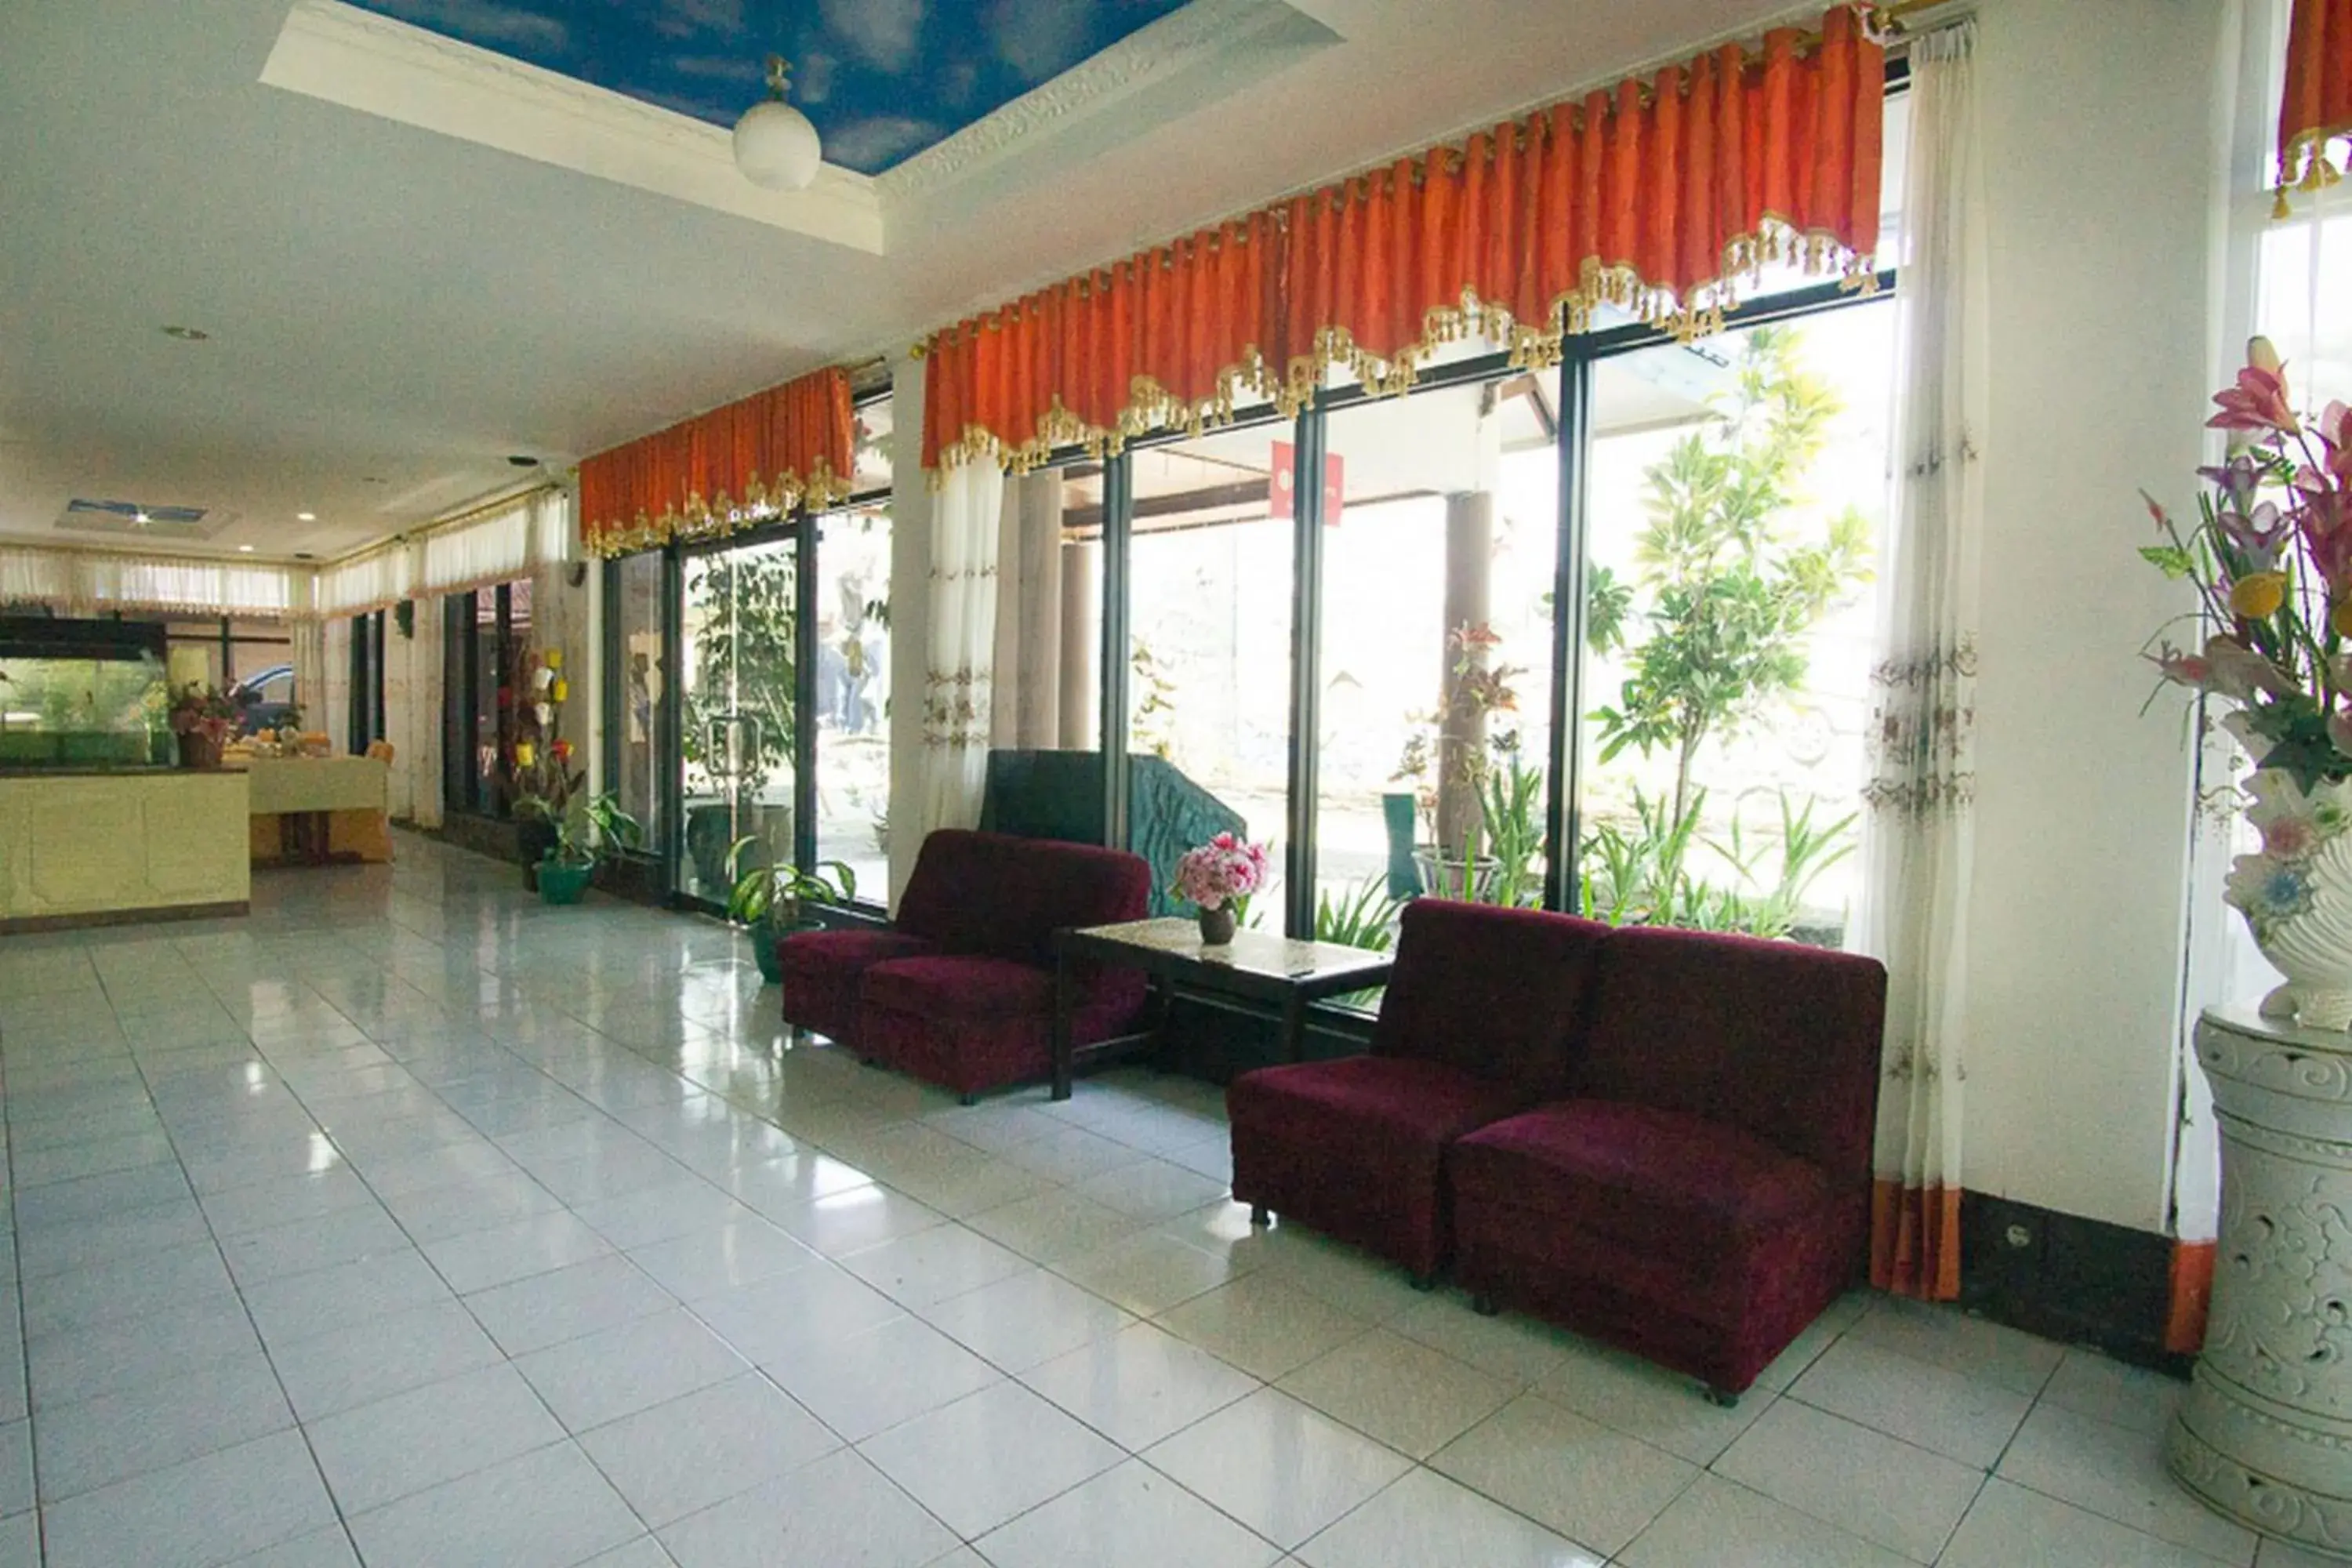 Lobby or reception, Lobby/Reception in RedDoorz plus near Pelabuhan Bitung